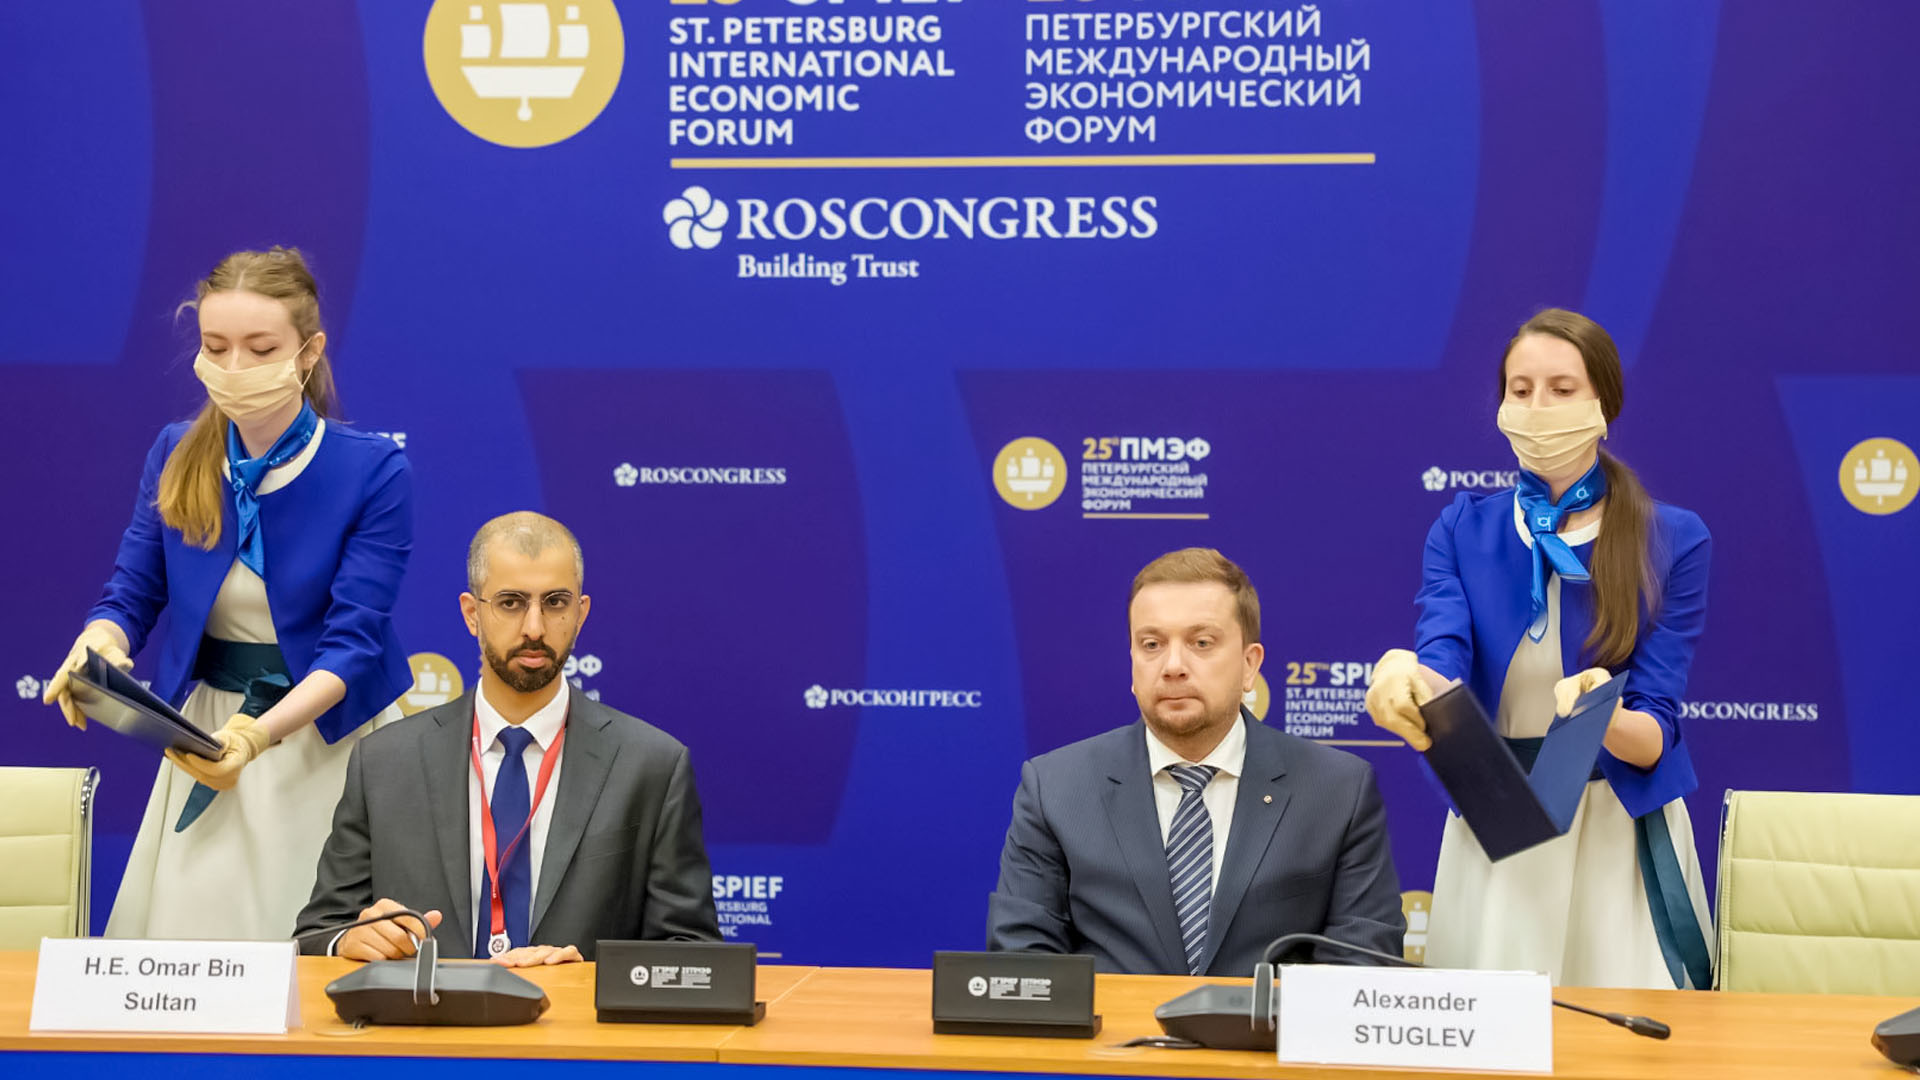 UAE participates in St. Petersburg International Economic Forum